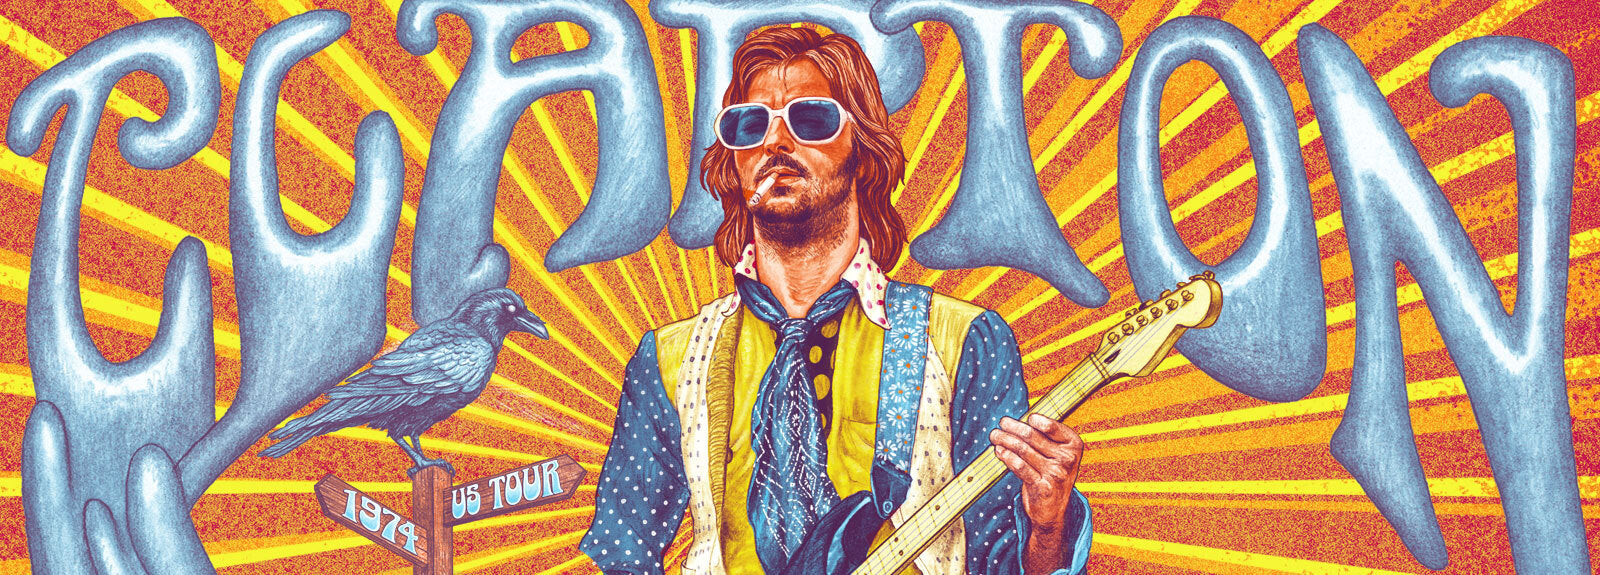 Eric Clapton 1974 Tour